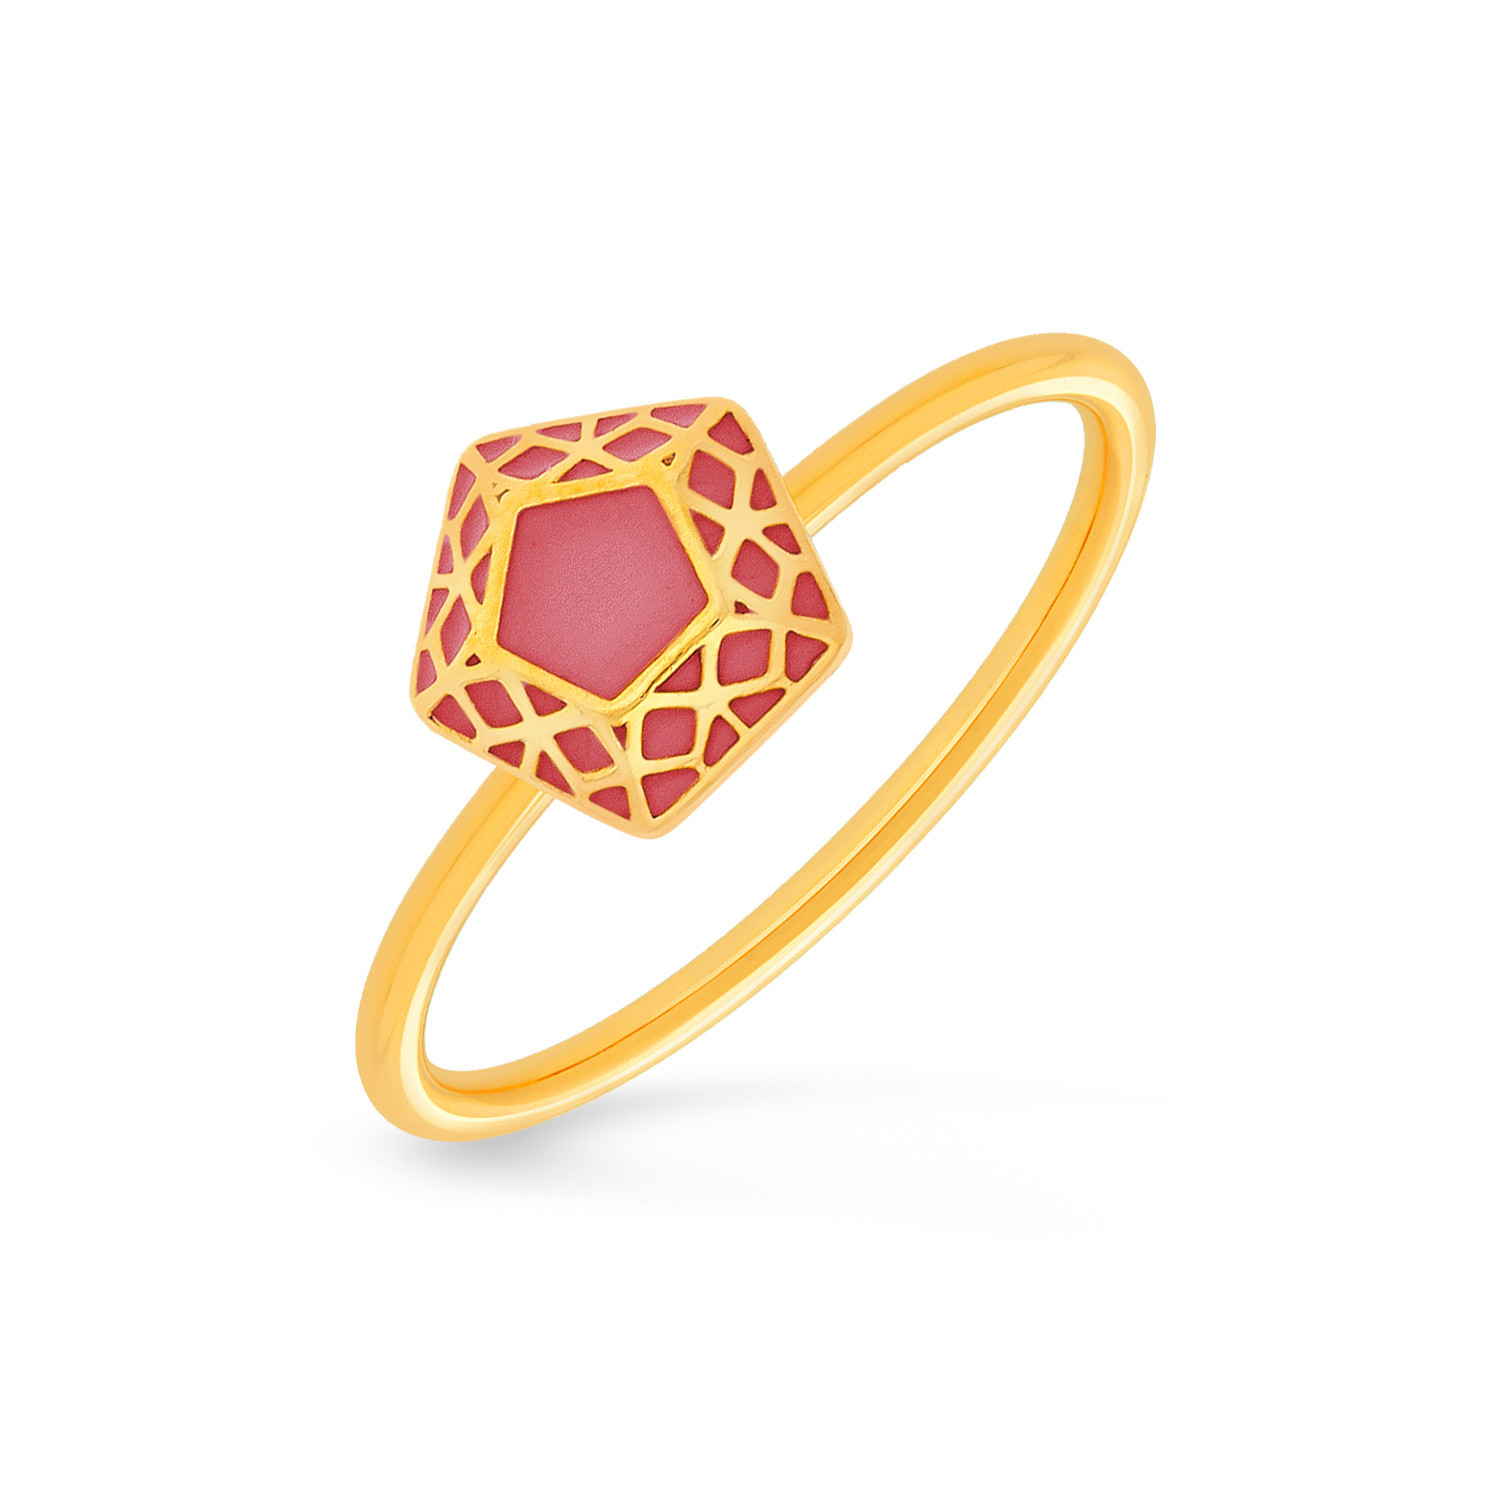 Scosha | Scosha Vintage 18K Gold Molded Ring with Diamond Ruby & Turquoise